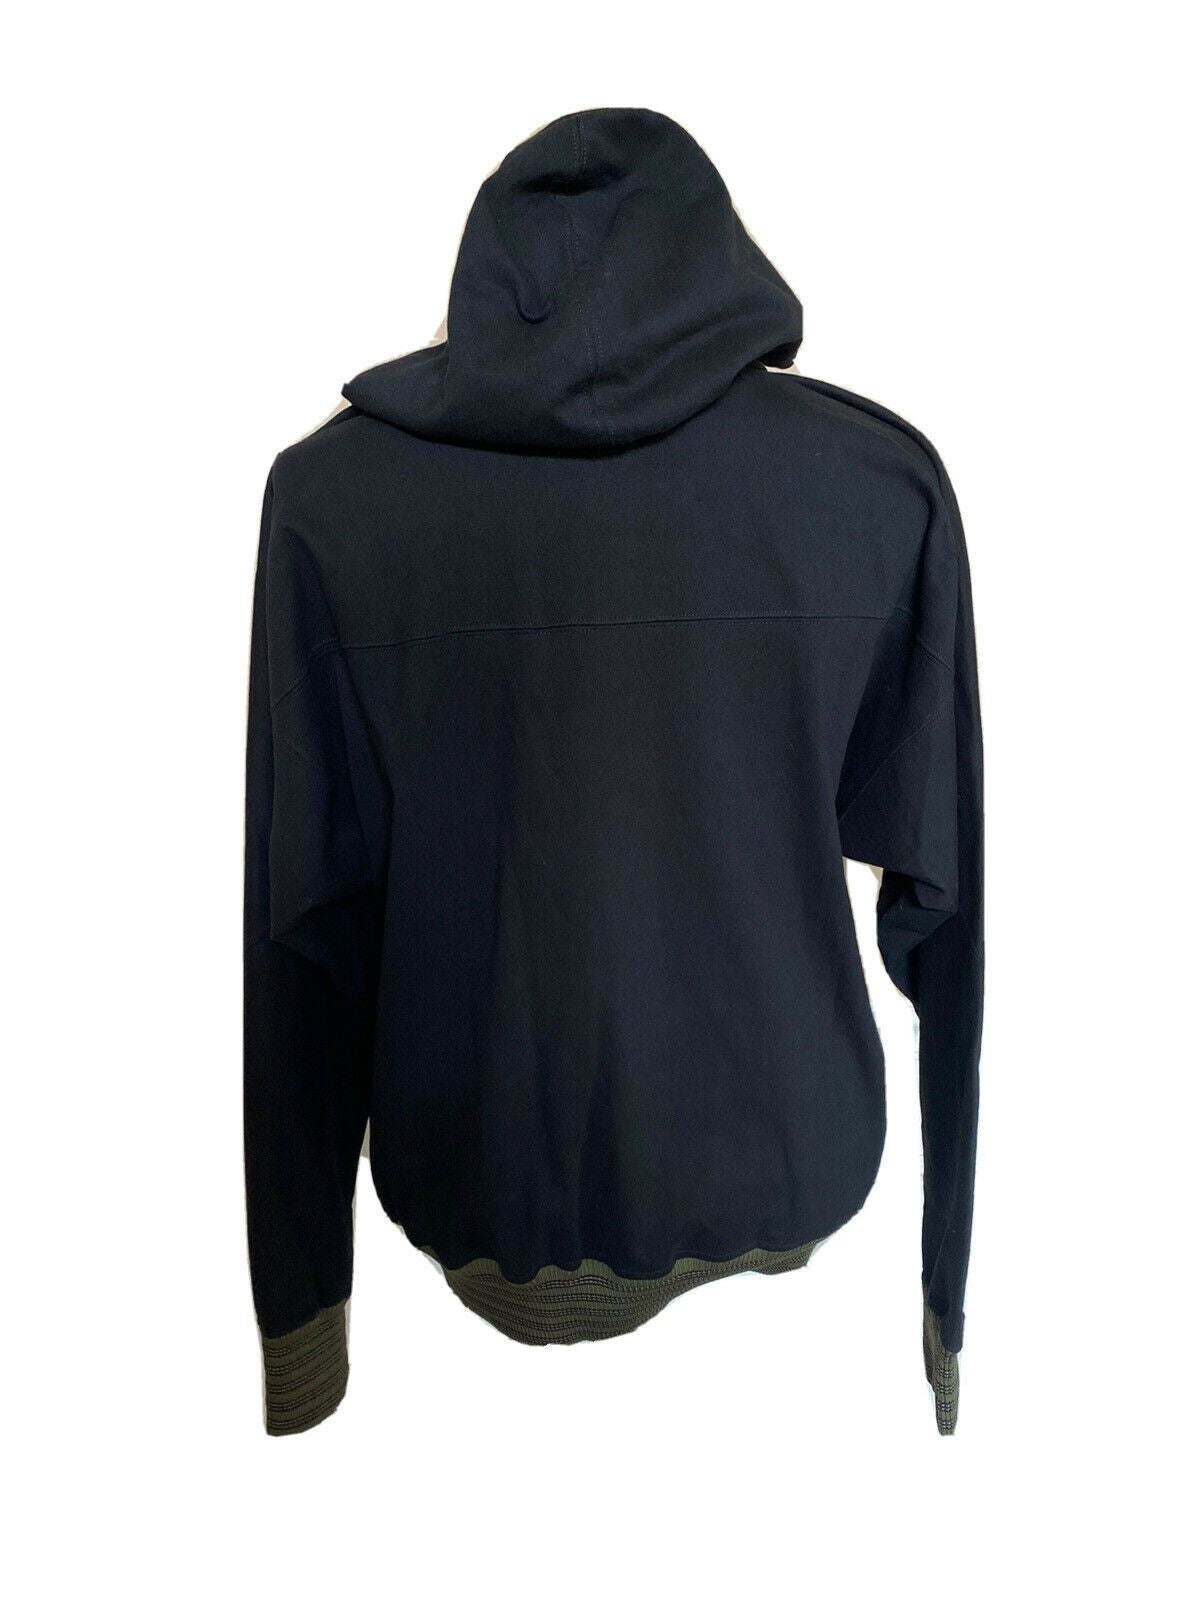 NWT $850 Bottega Veneta Sweater with Hoodie Black 48 US (58 Eu) 567154